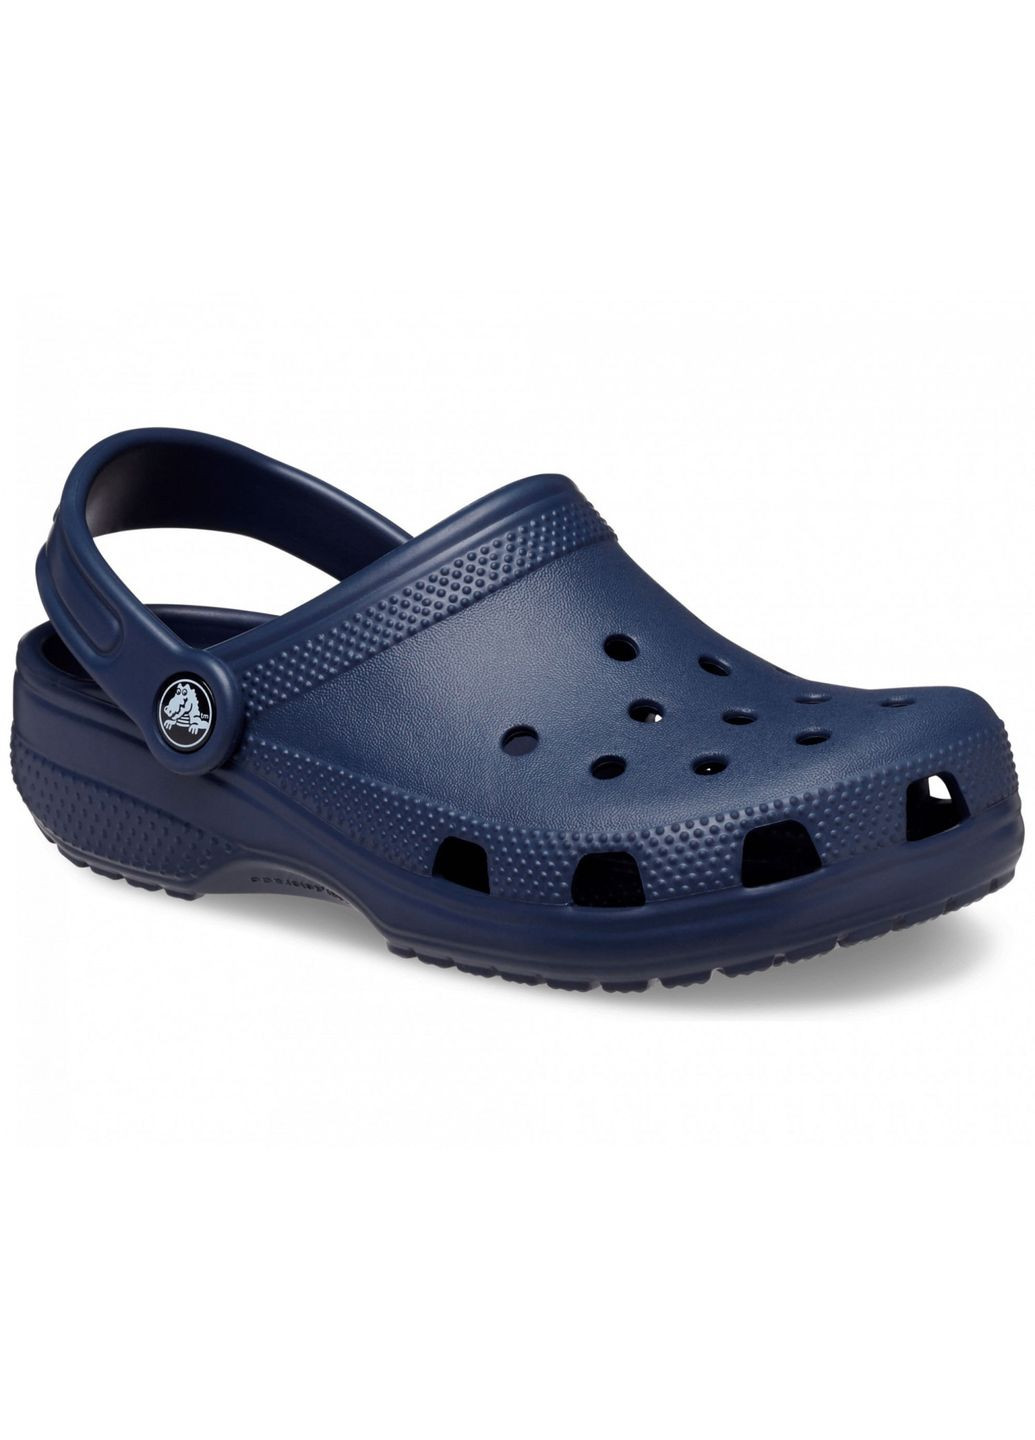 Синие сабо kids classic clog navy c12\29\18.5 см 206991 Crocs